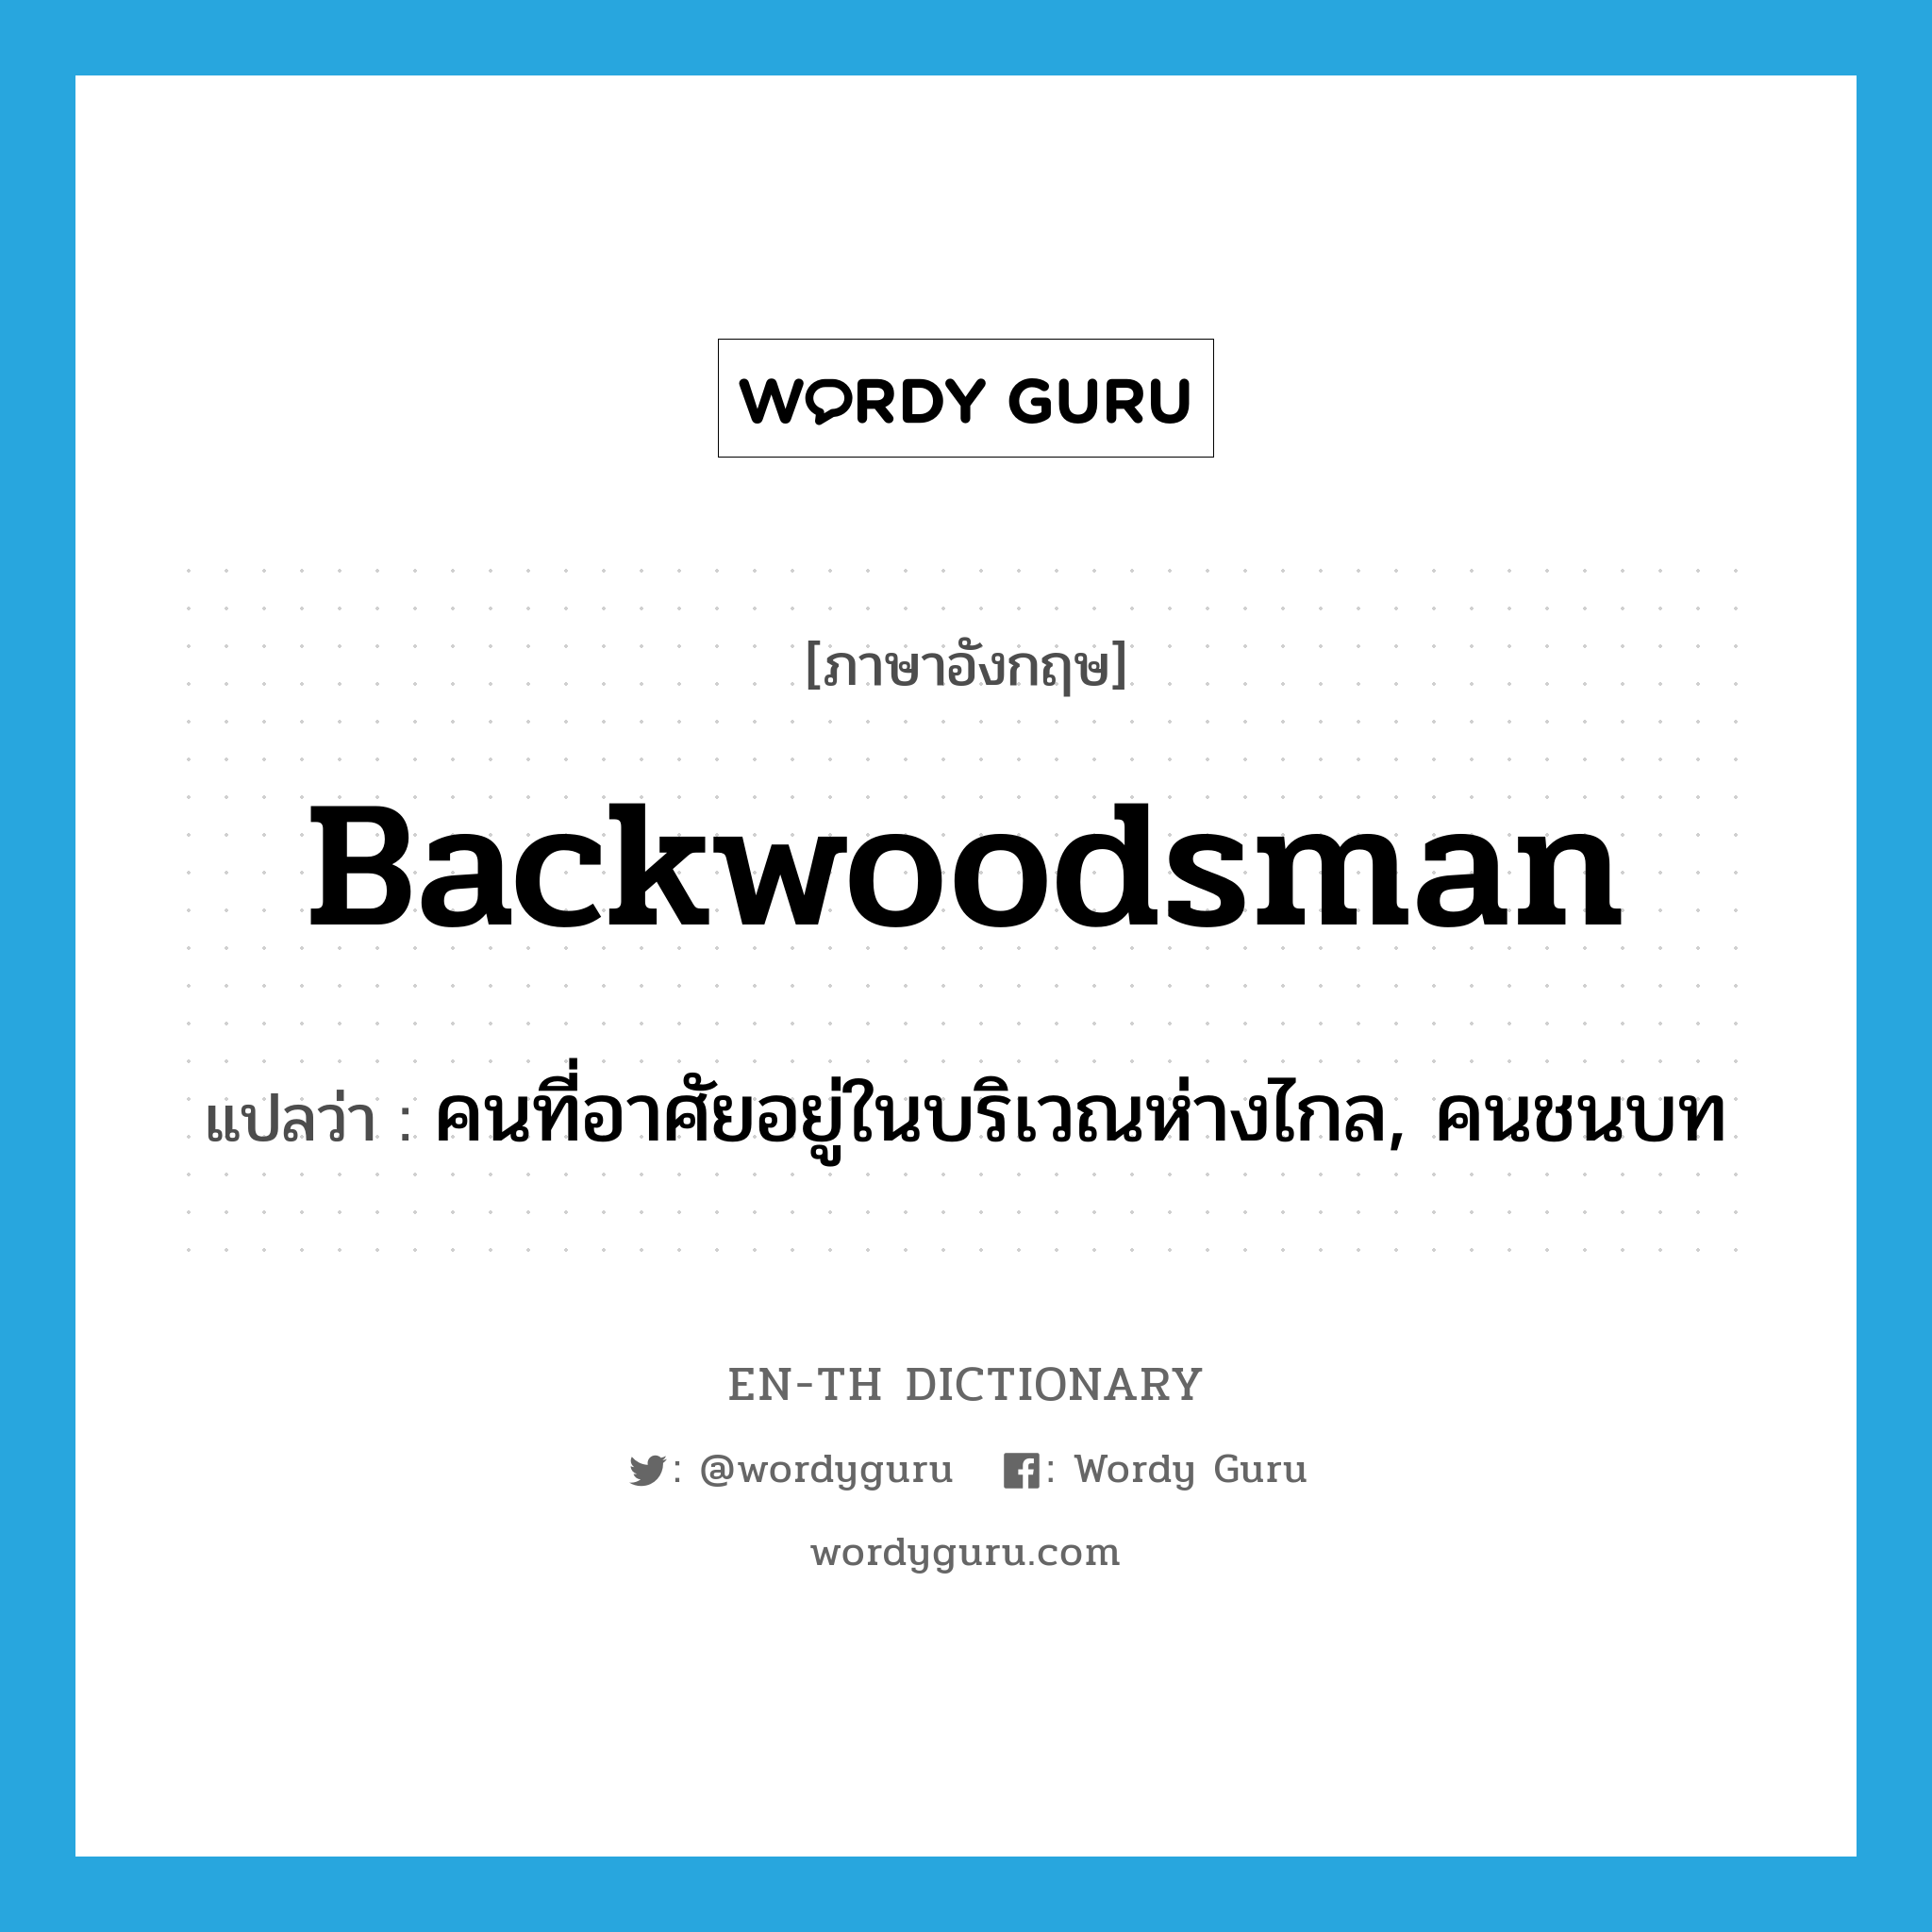 backwoodsman แปลว่า?, คำศัพท์ภาษาอังกฤษ backwoodsman แปลว่า คนที่อาศัยอยู่ในบริเวณห่างไกล, คนชนบท ประเภท N หมวด N